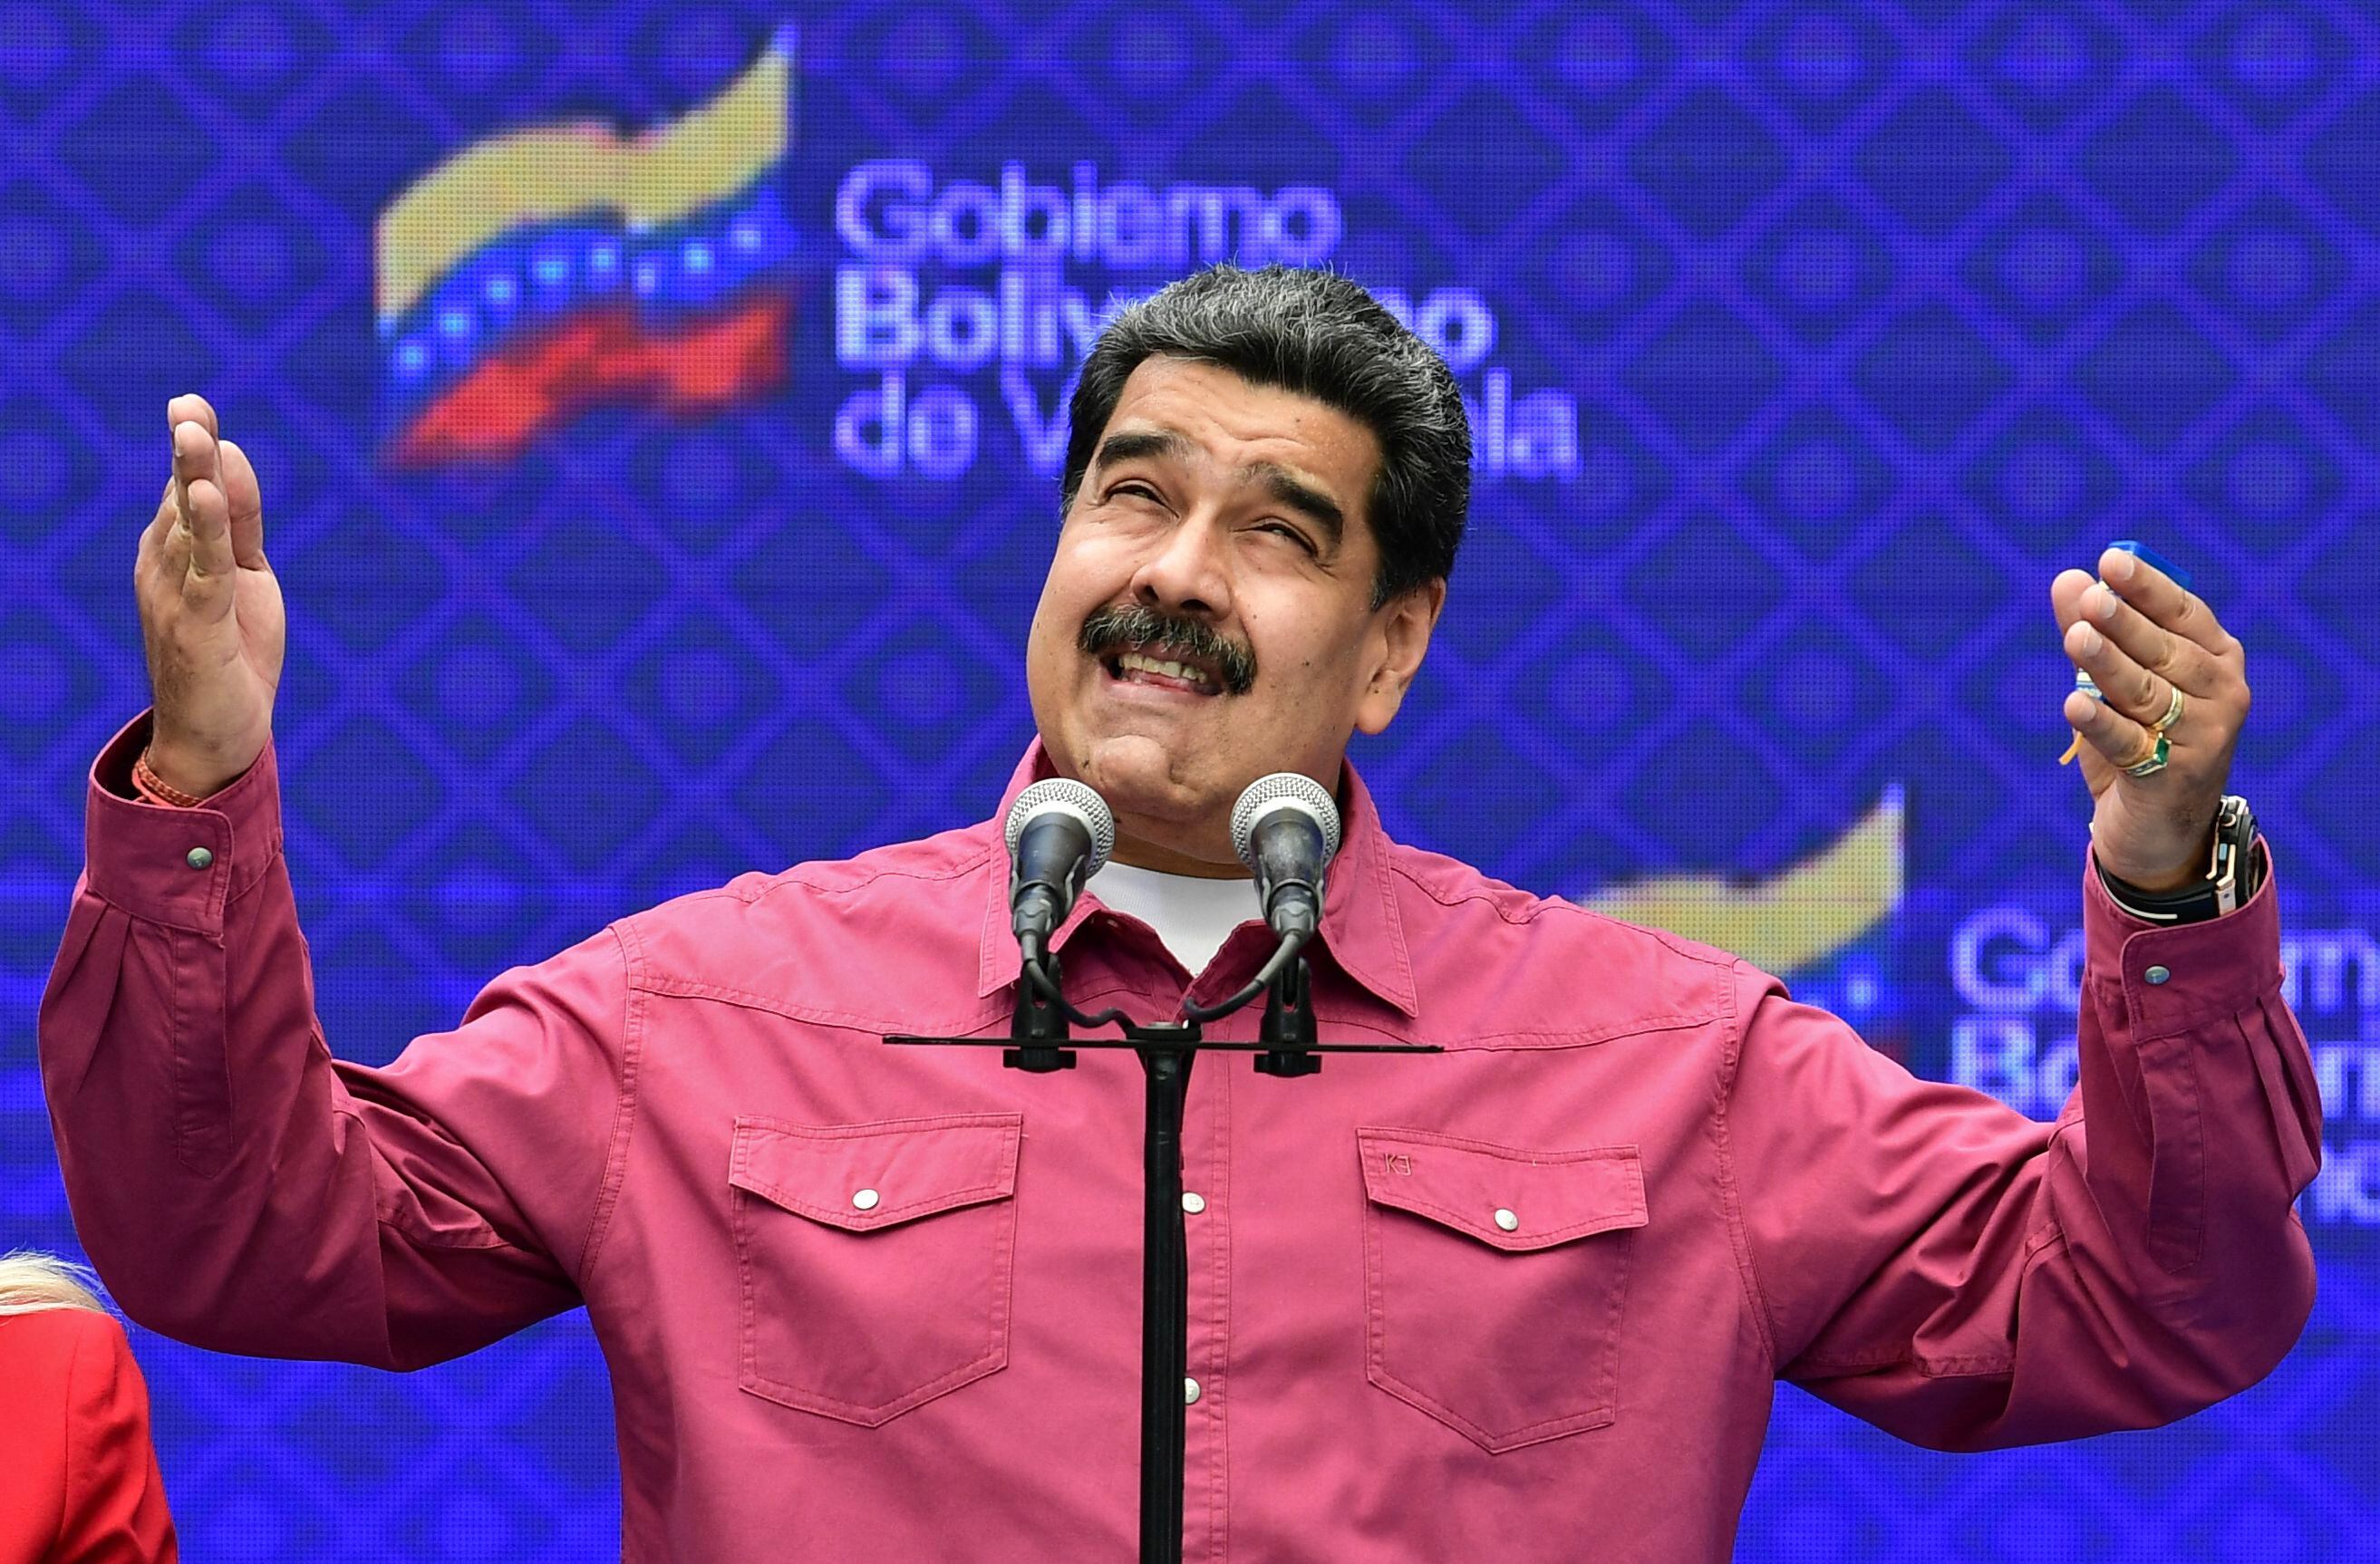 La detención de Pulido coincide con una supuesta purga anticorrupción ordenada por el presidente venezolano, Nicolás Maduro.